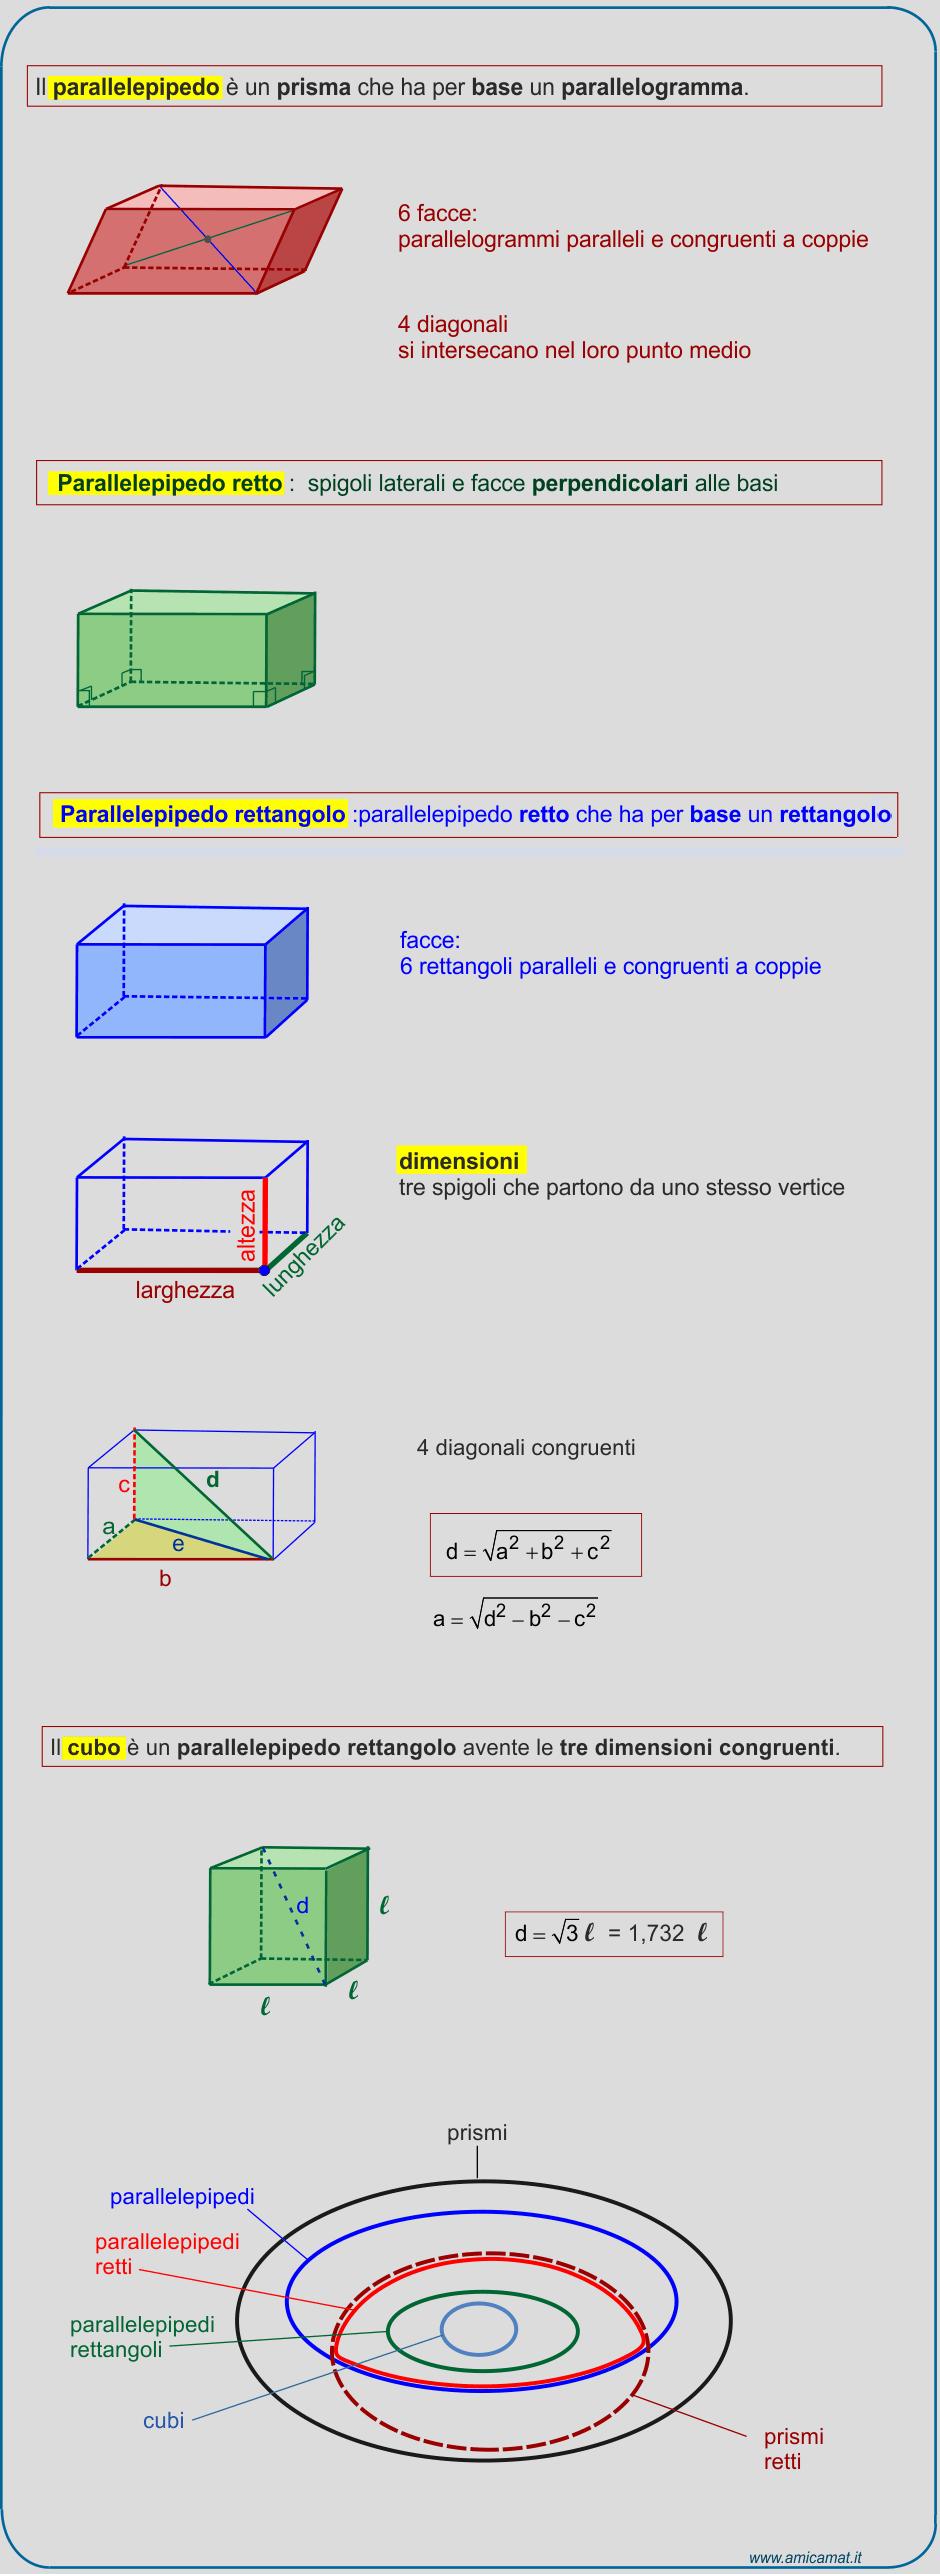 ¿Cuáles son las tres dimensiones del paralelepípedo rectángulo?